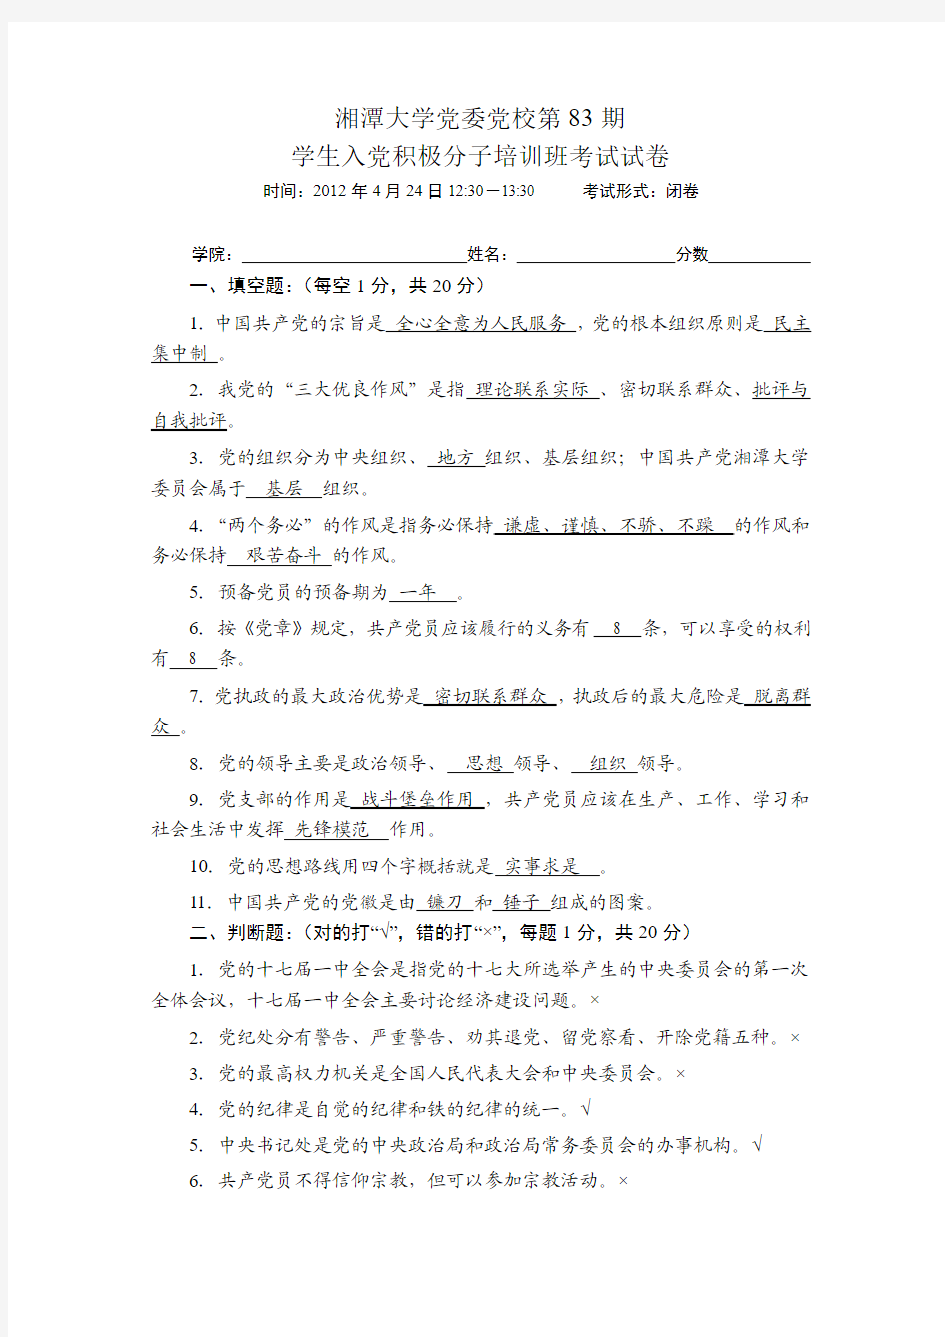 湘潭大学党委党校第83期学生入党积极分子培训班考试试卷